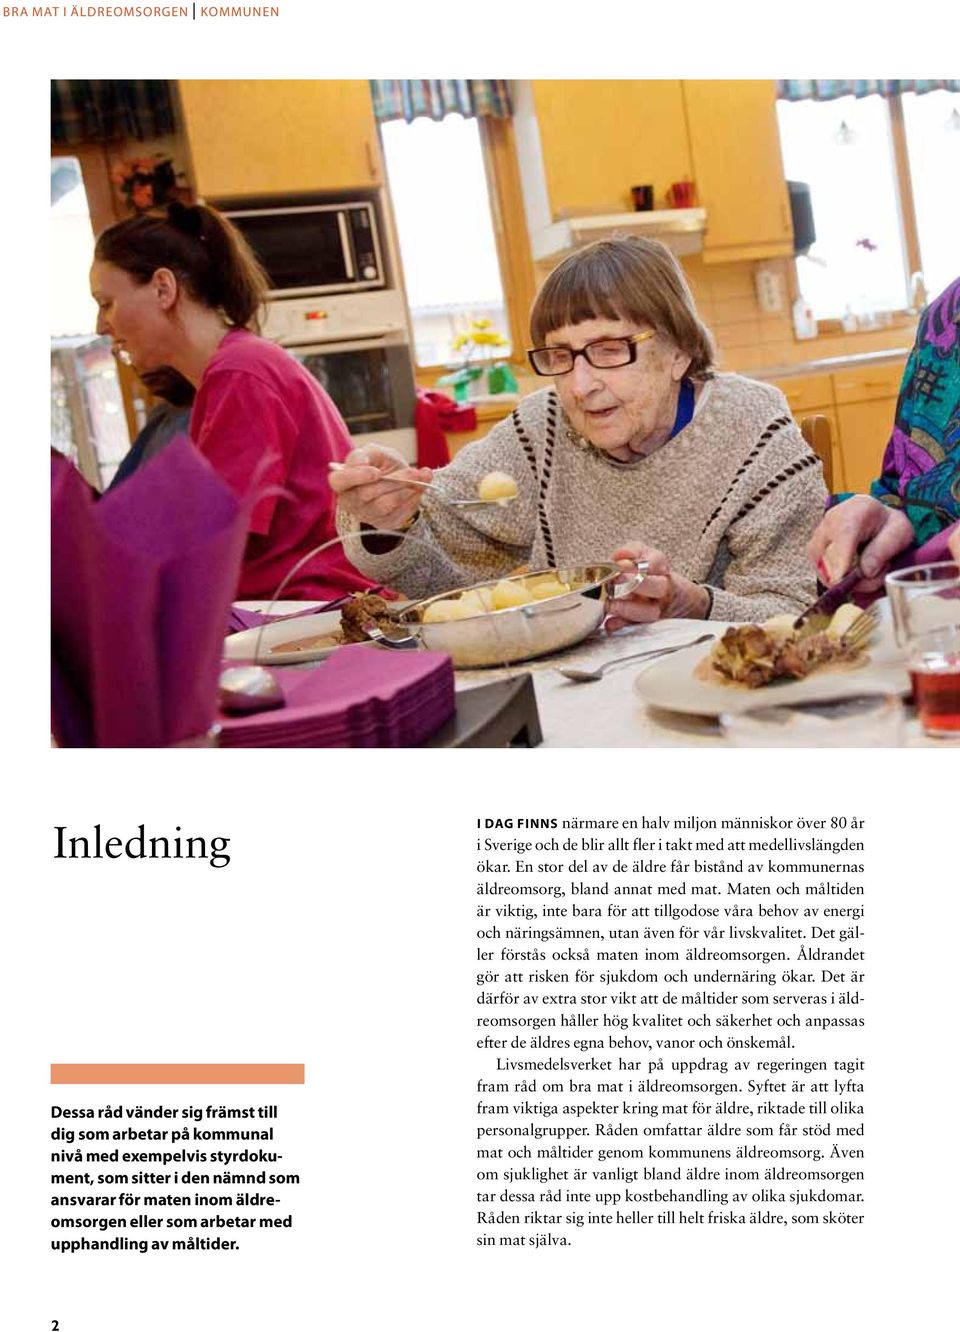 En stor del av de äldre får bistånd av kommunernas äldreomsorg, bland annat med mat.